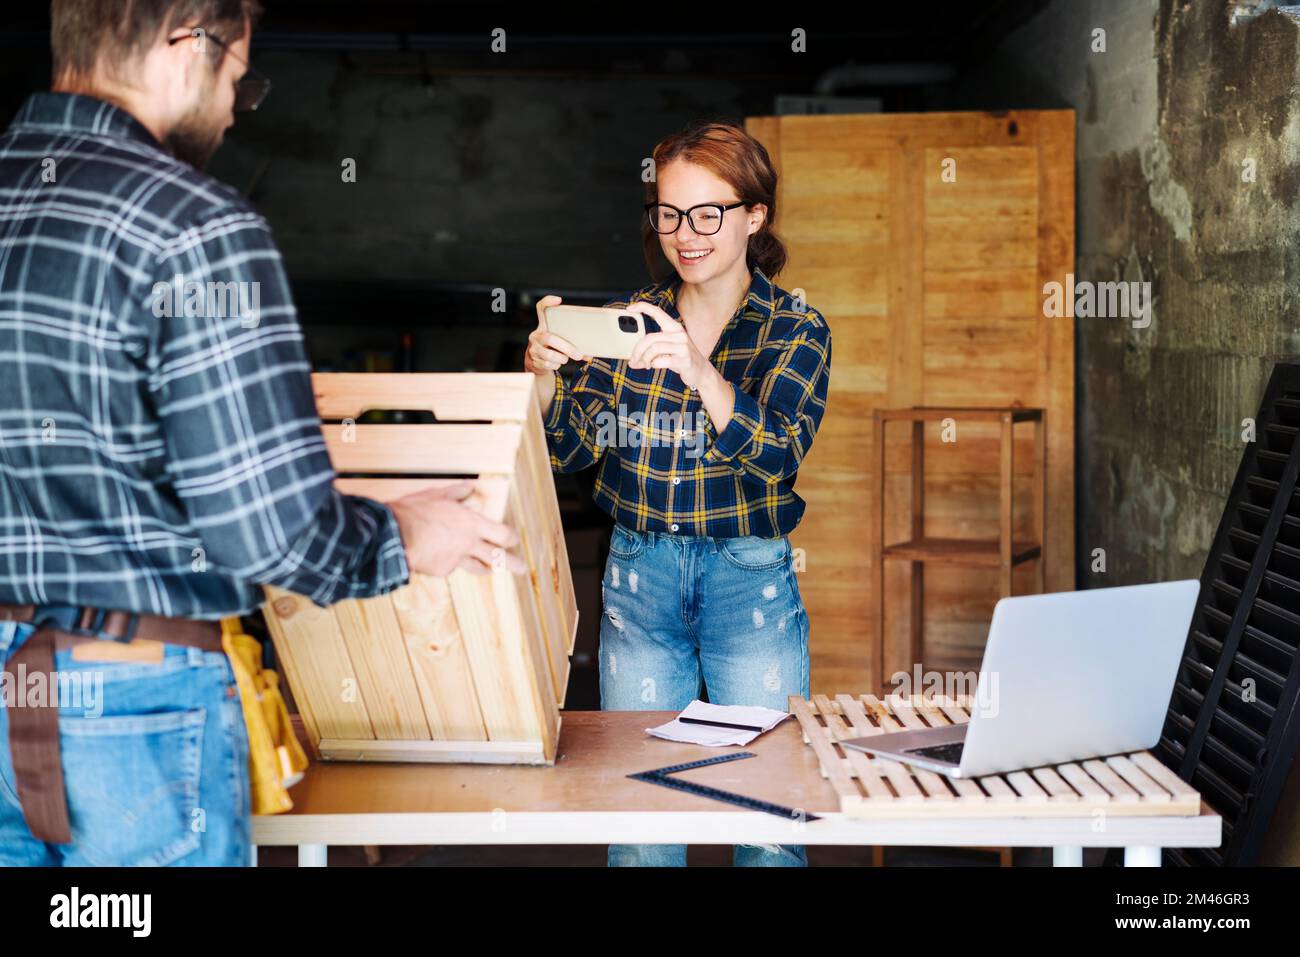 Junge Geschäftsfrau, die mit ihrem Smartphone Fotos von Holzprodukten macht, während sie in ihrer eigenen Werkstatt arbeitet. Stockfoto